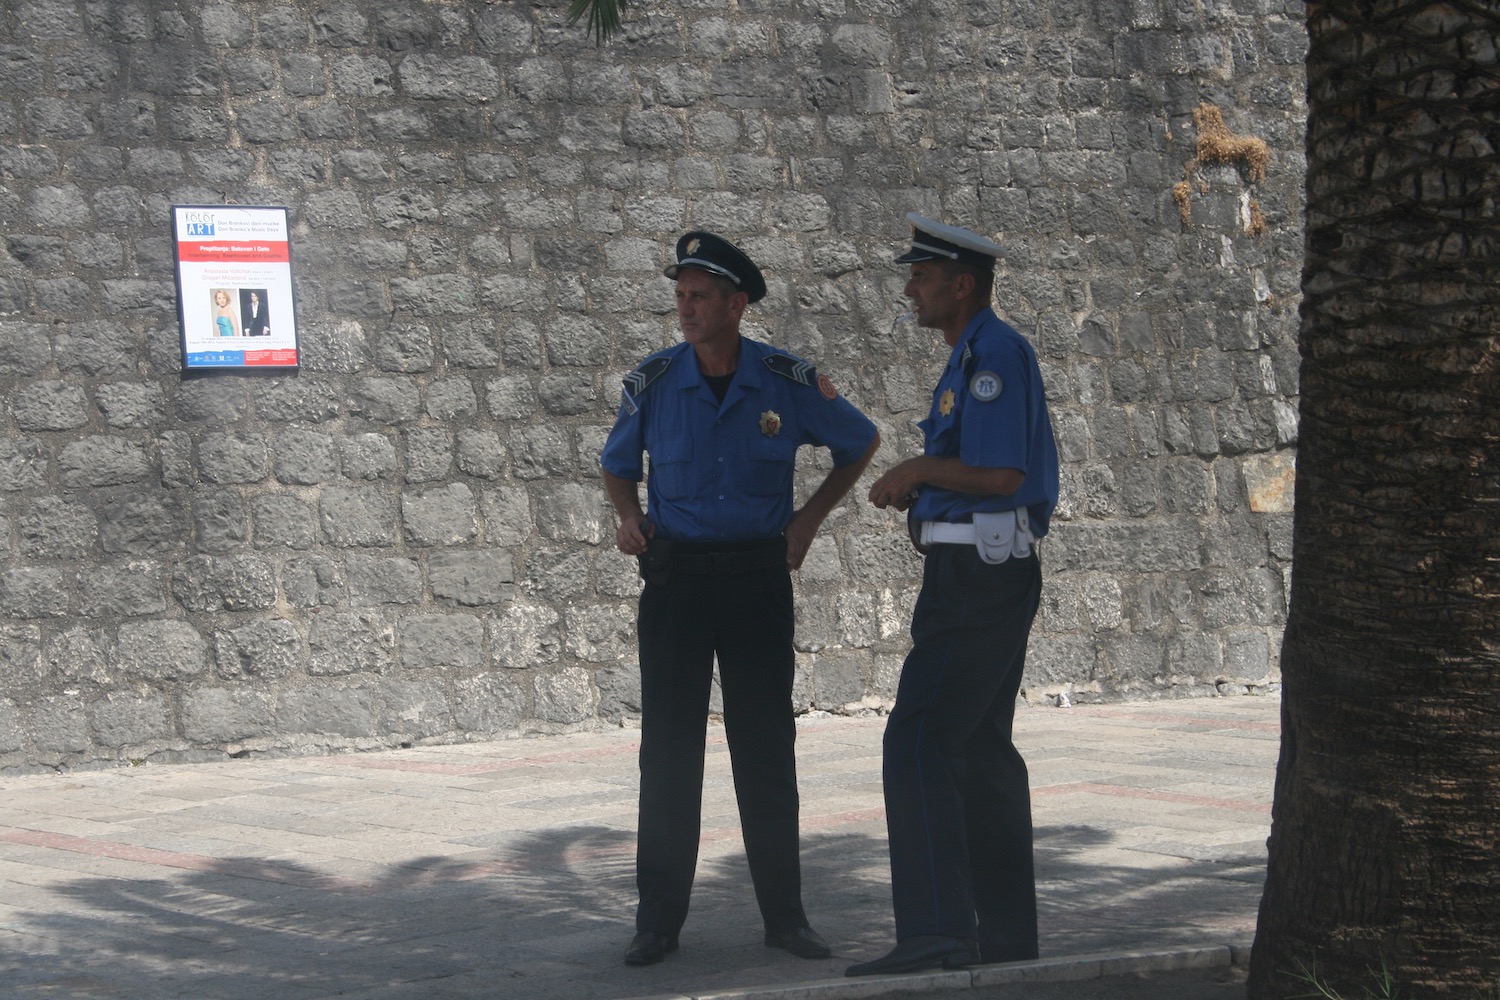 two men in uniform standing on a sidewalk